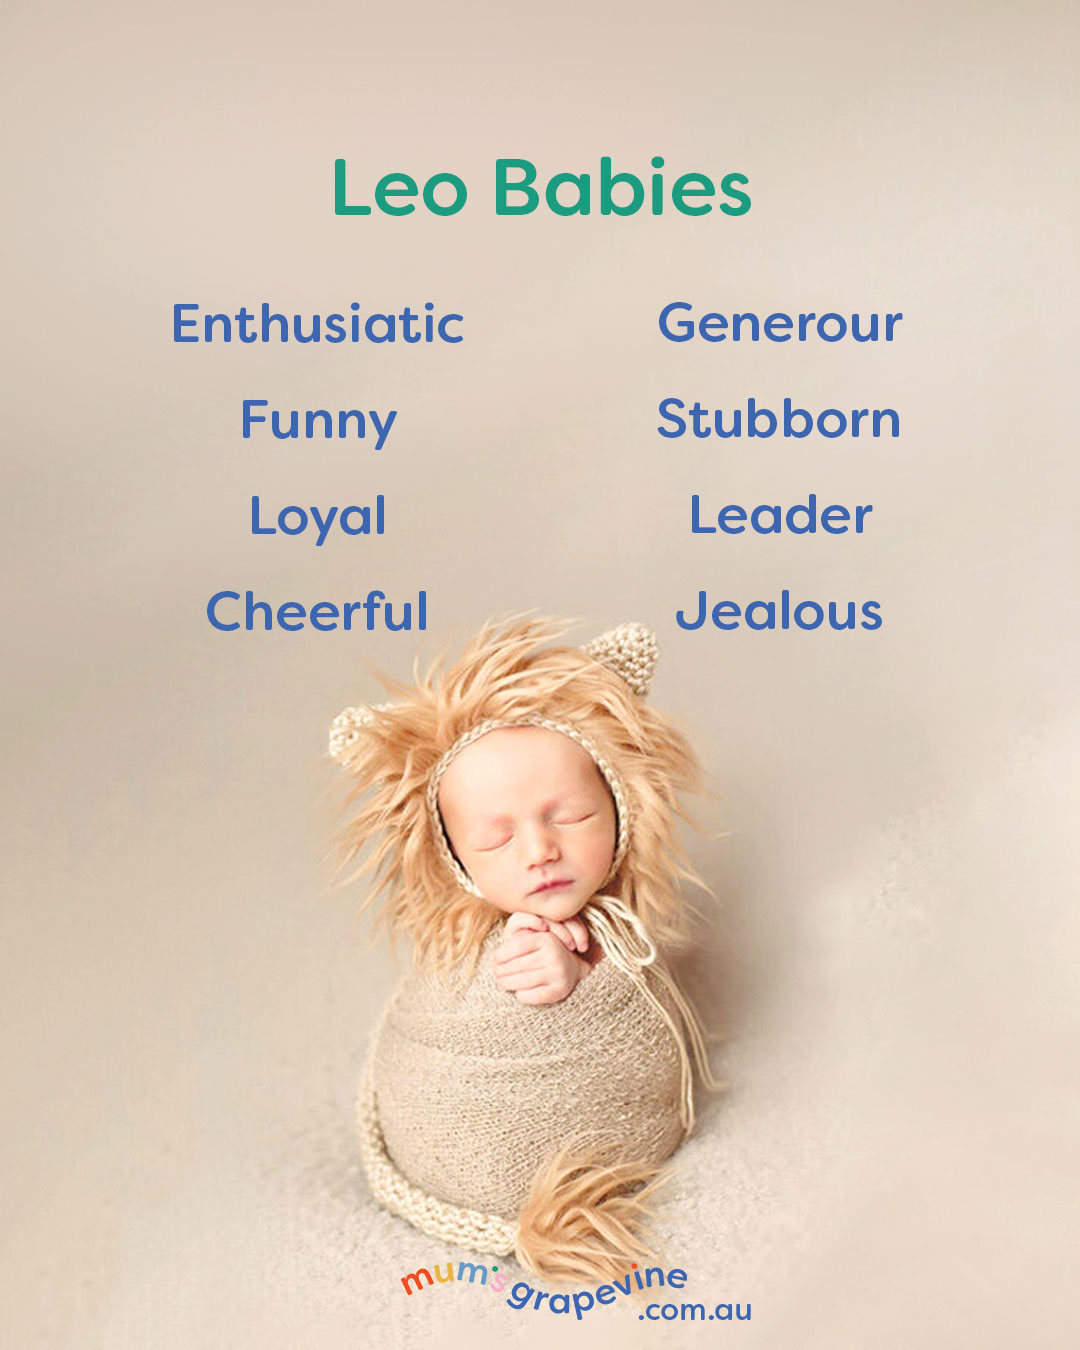 Leo baby traits